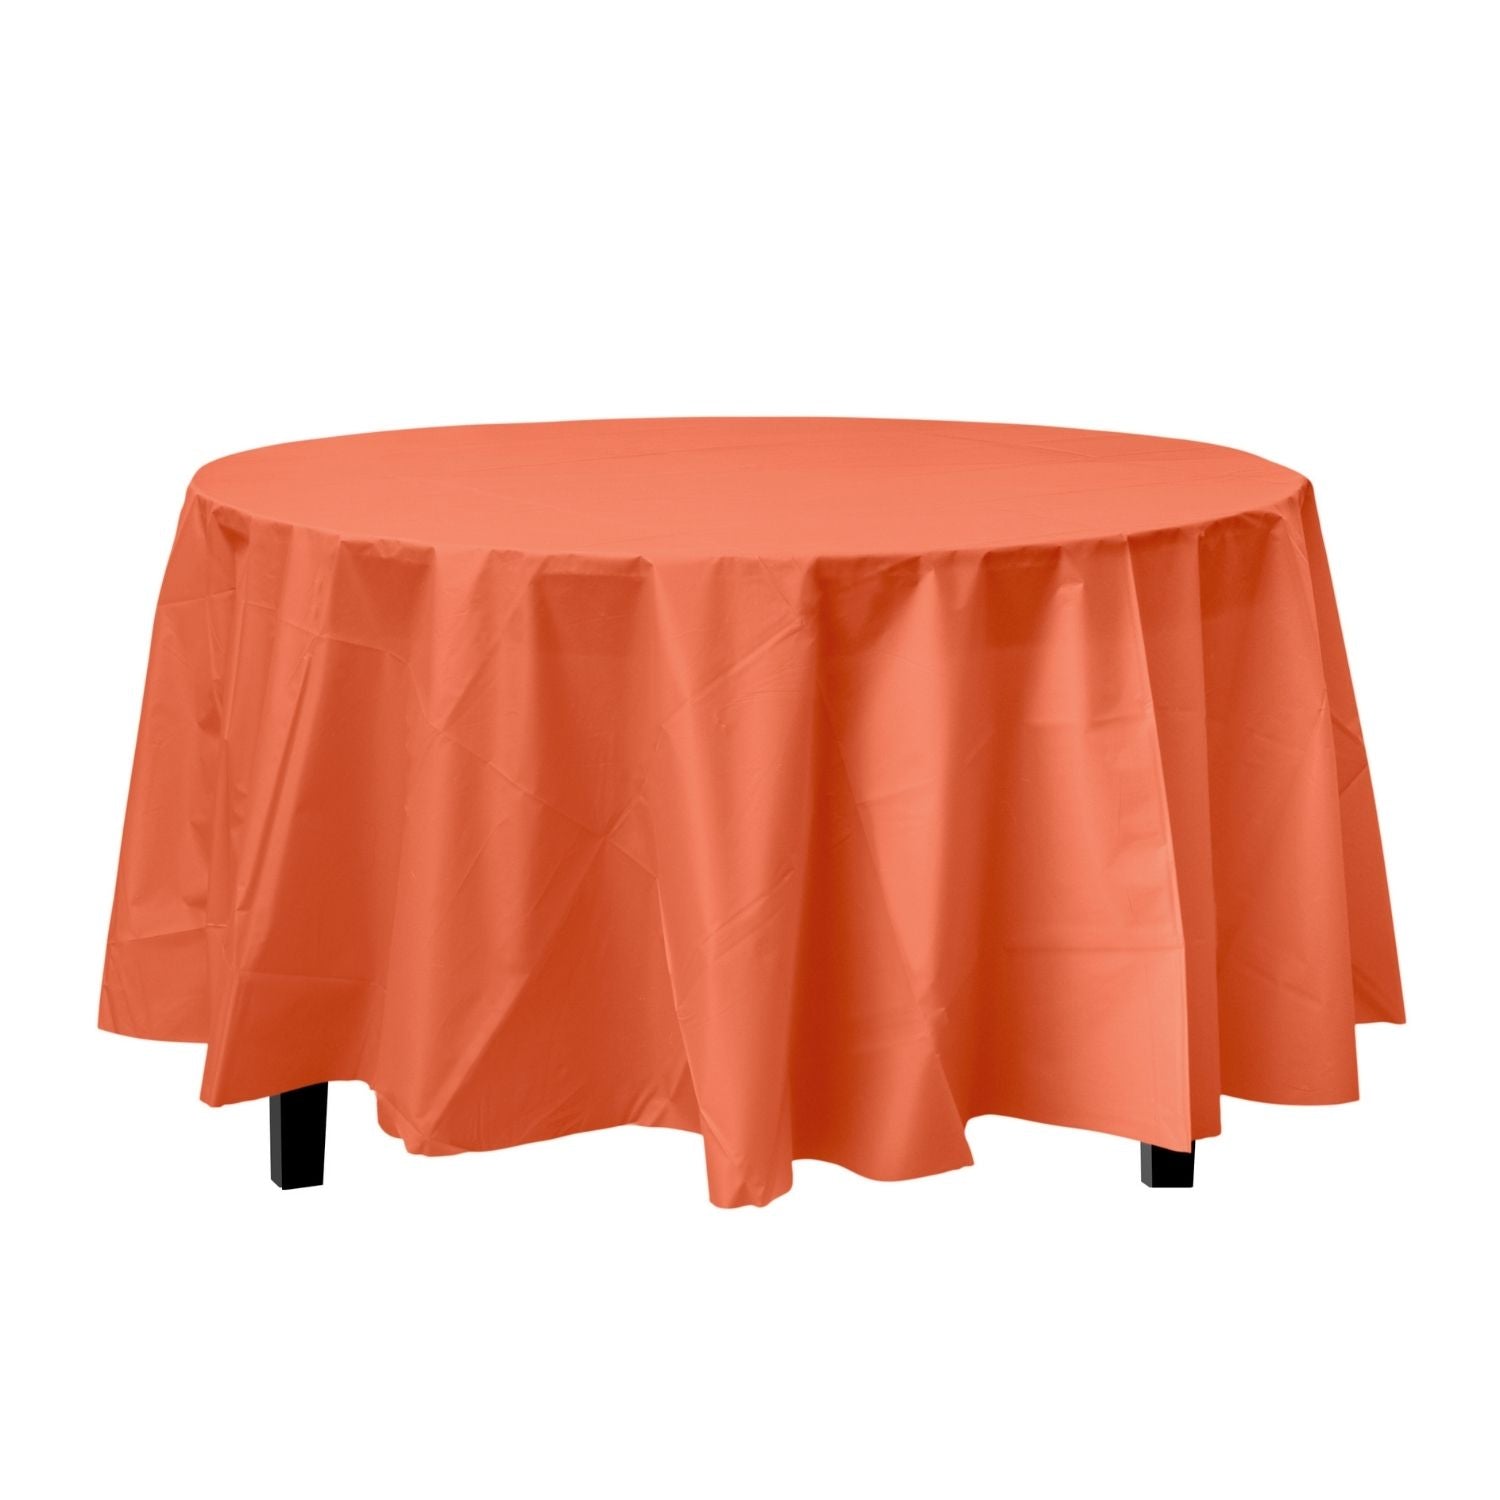 Premium Round Orange Plastic Tablecloth | 96 Count